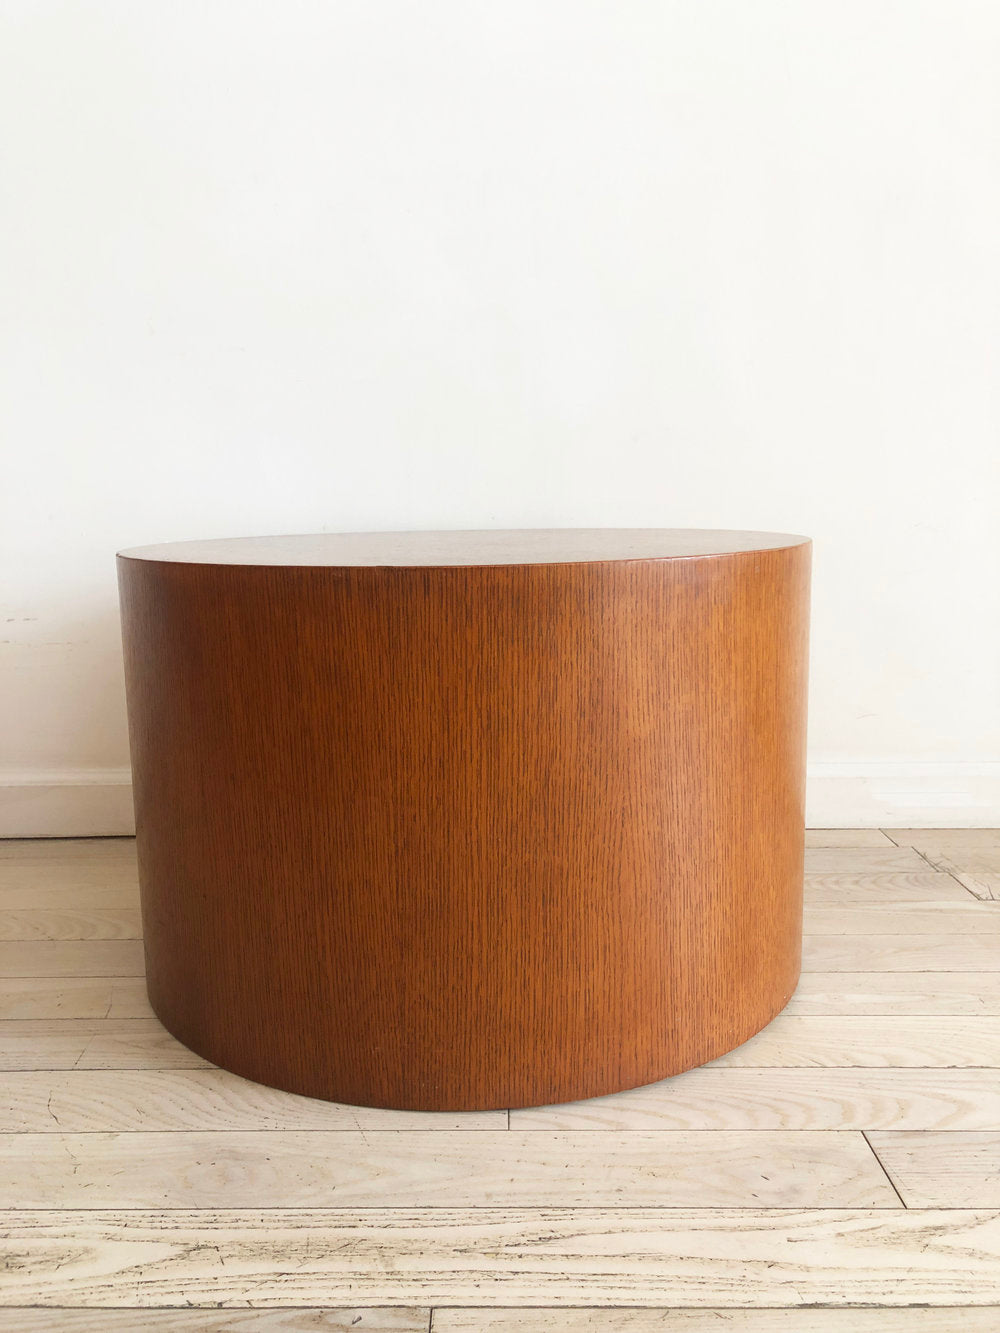 Beautiful 1970s Oak Drum Table by Paul Mayen For Habitat / Intrex